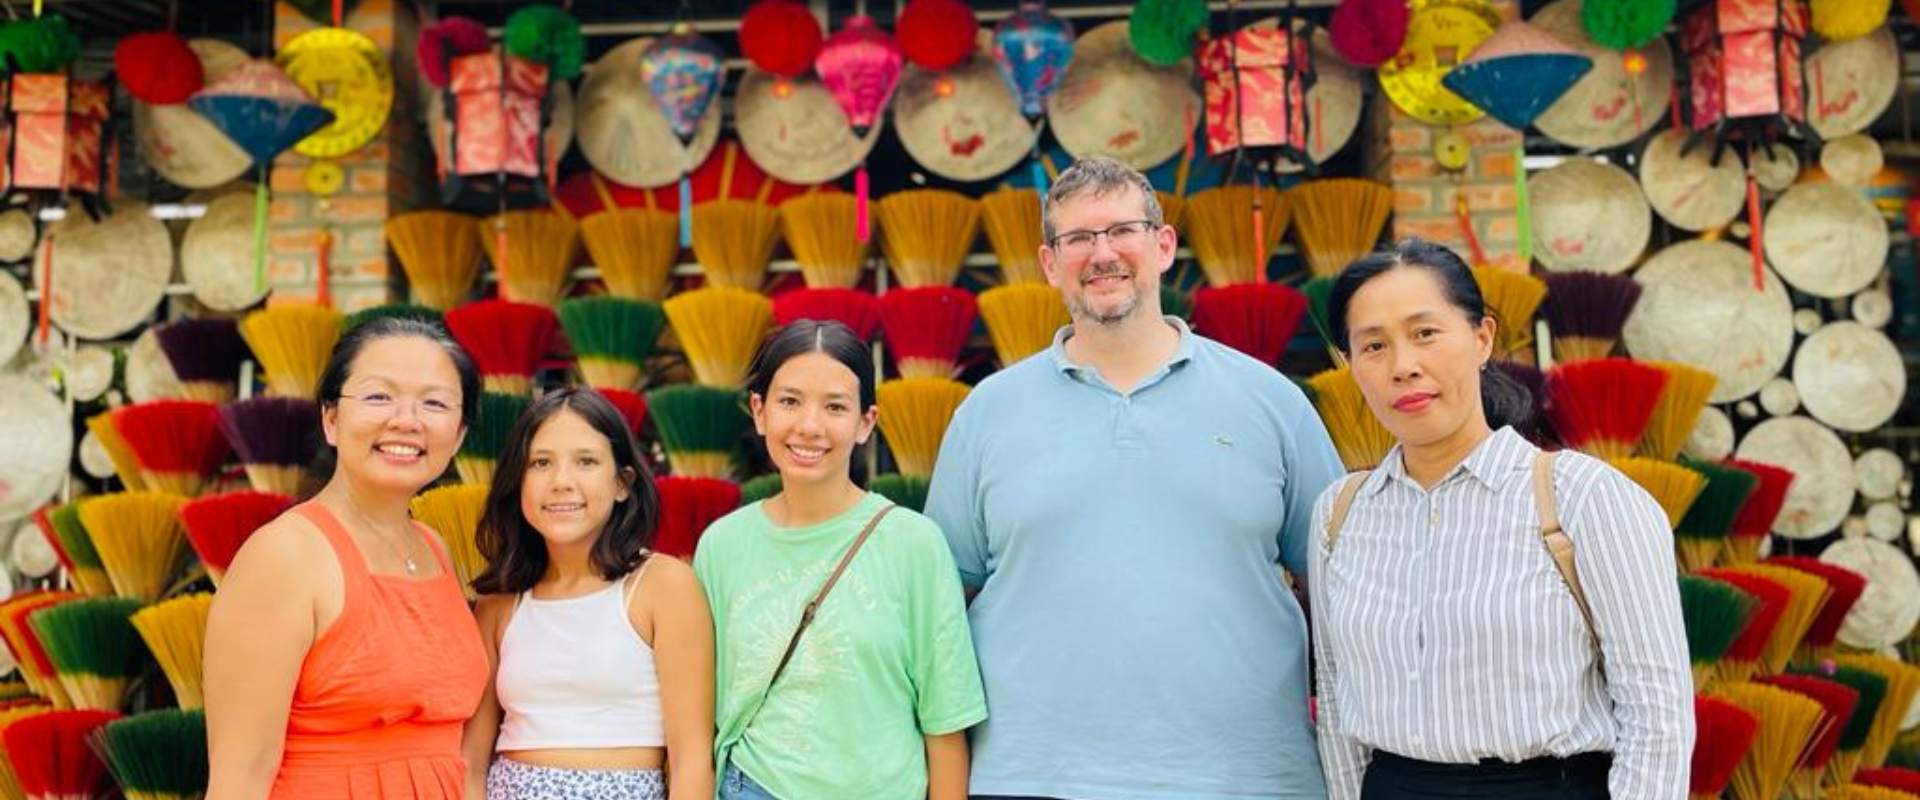 Activité ludique pour le voyage familial au Vietnam